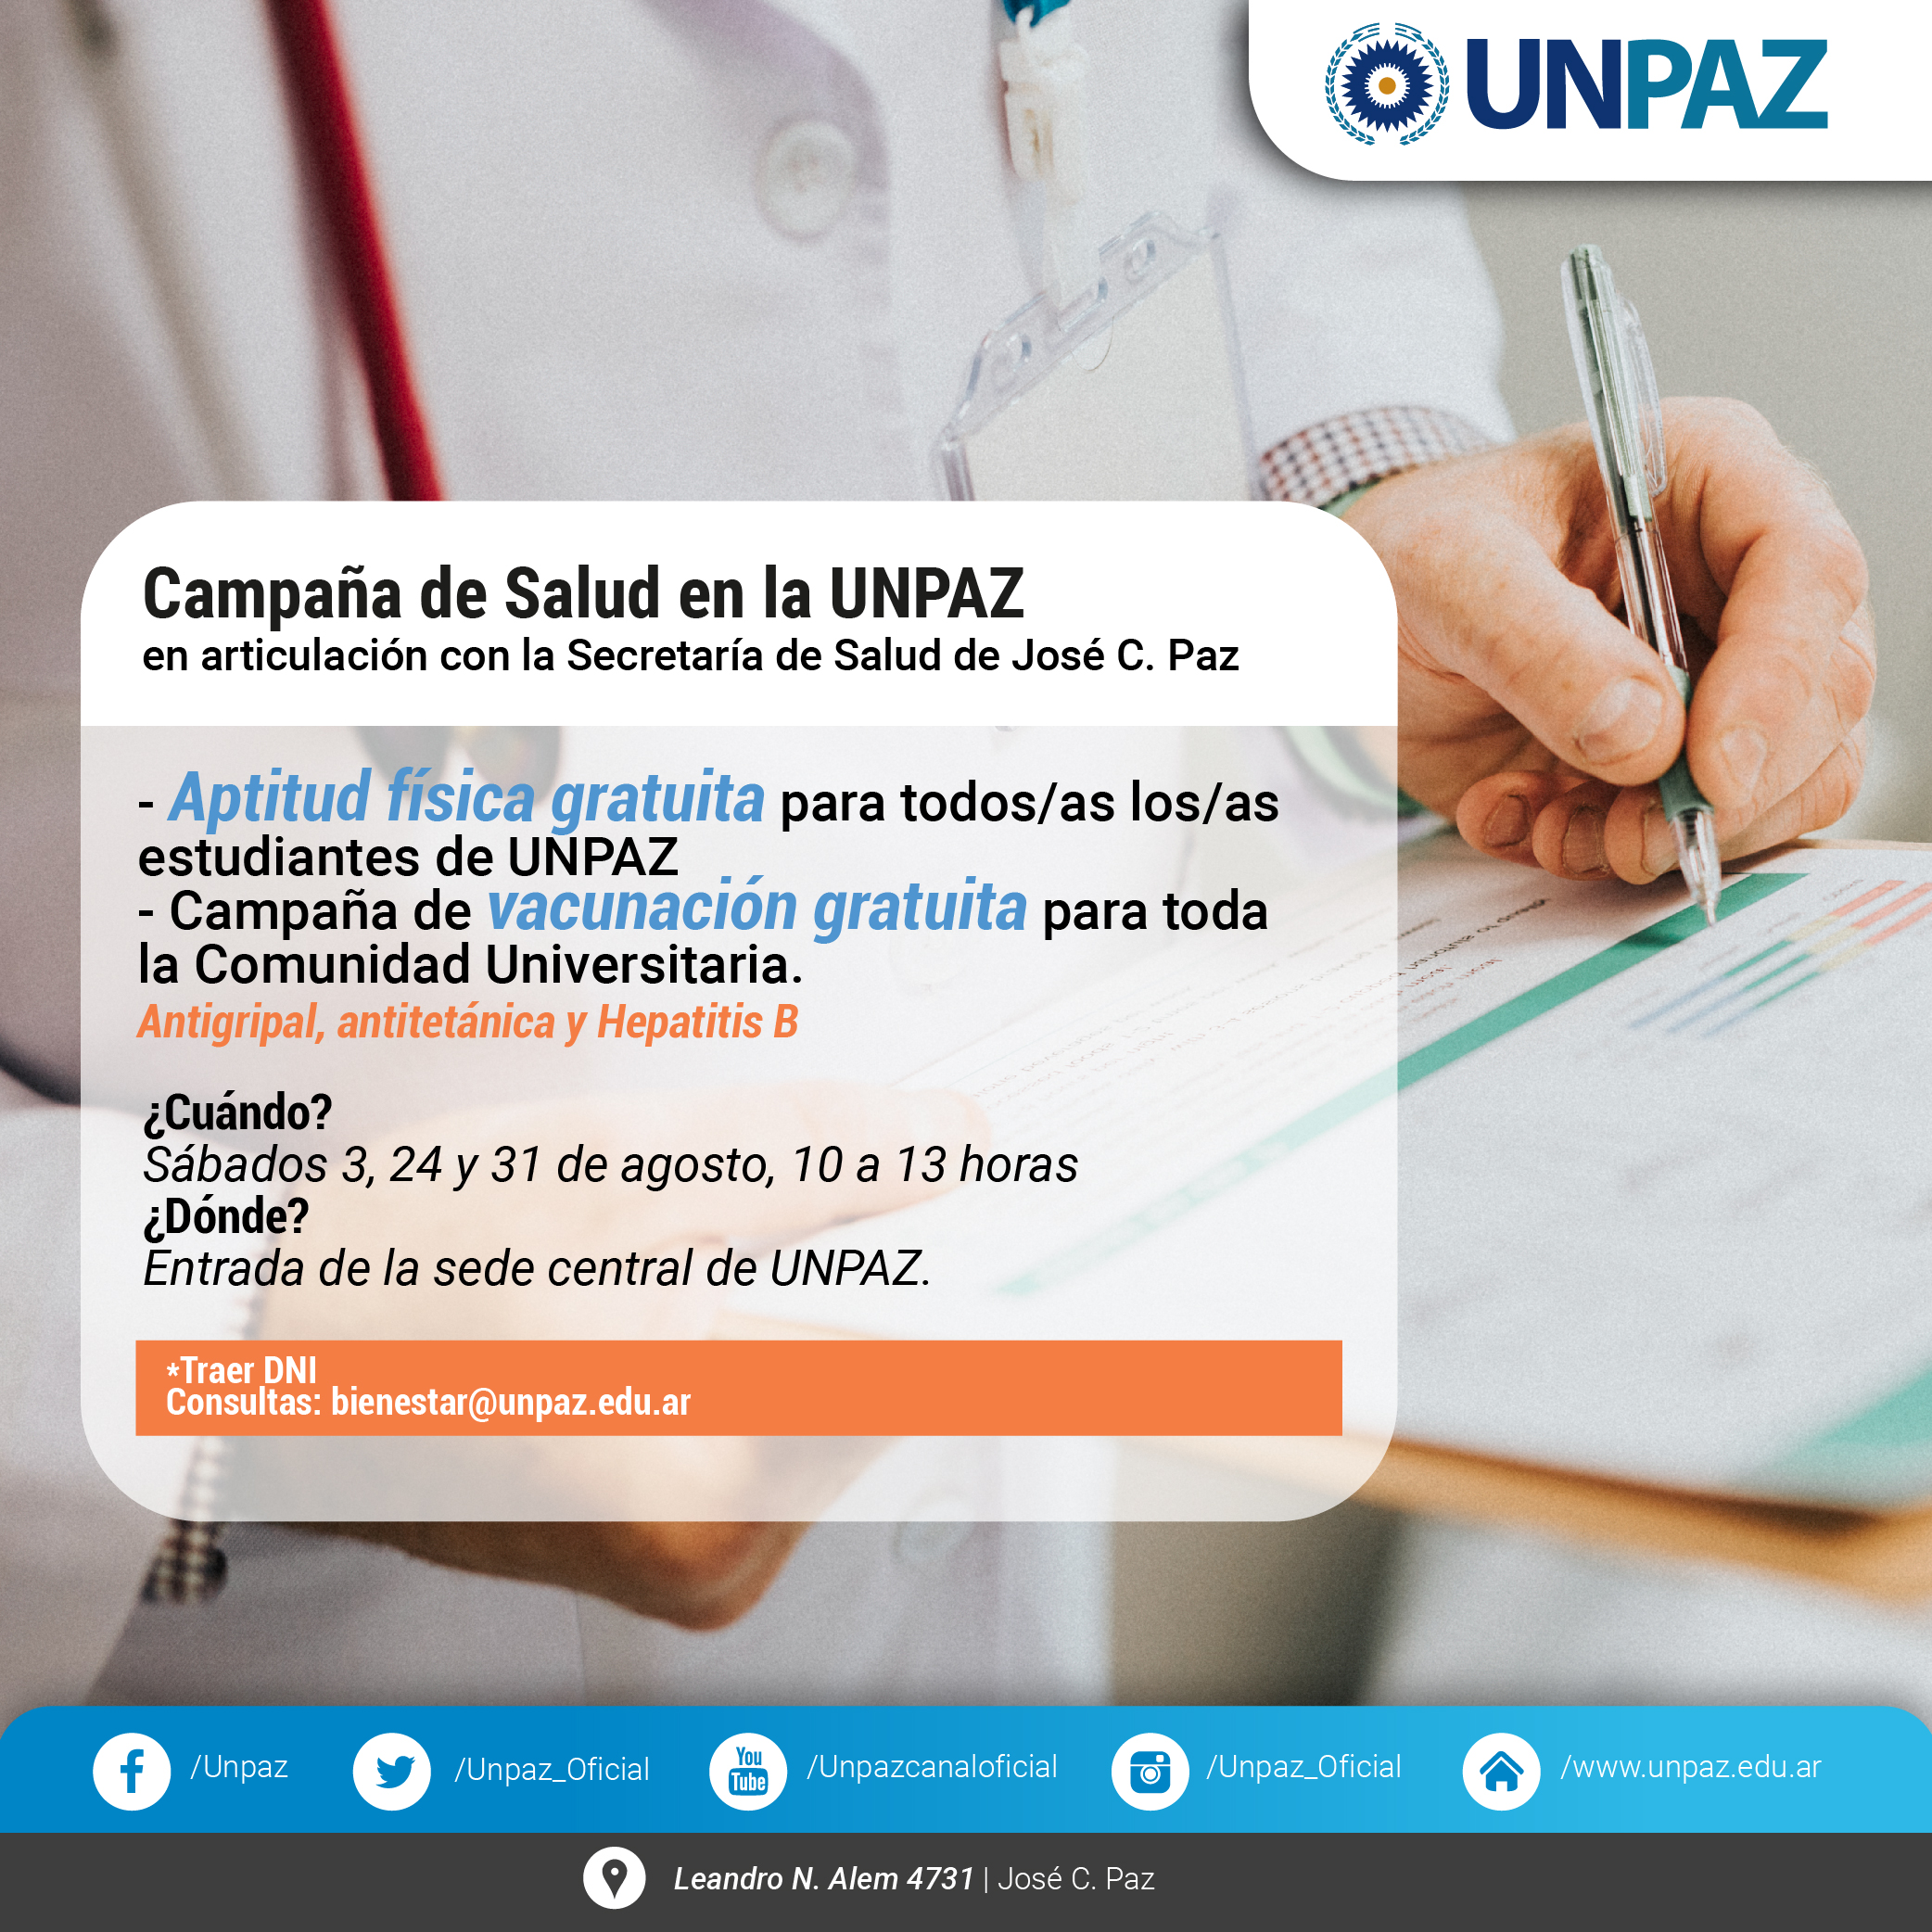 UNPAZ. Vacunación y aptitud física gratuita